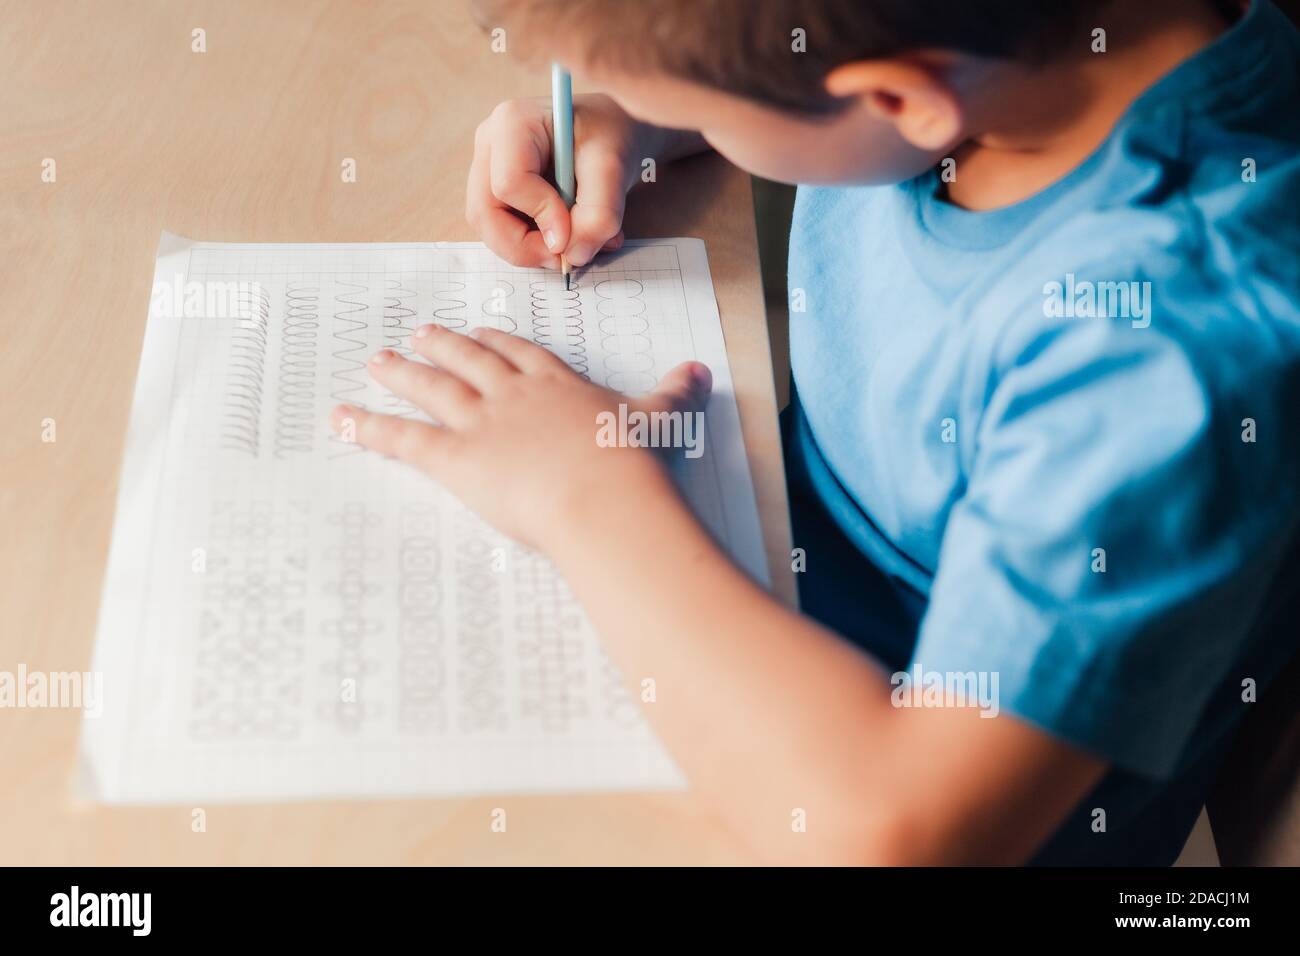 Seitenansicht für kleinen Jungen, der Schreibübungen macht. Kind schreiben mit Bleistift. Konzept der Kindererziehung Stockfoto